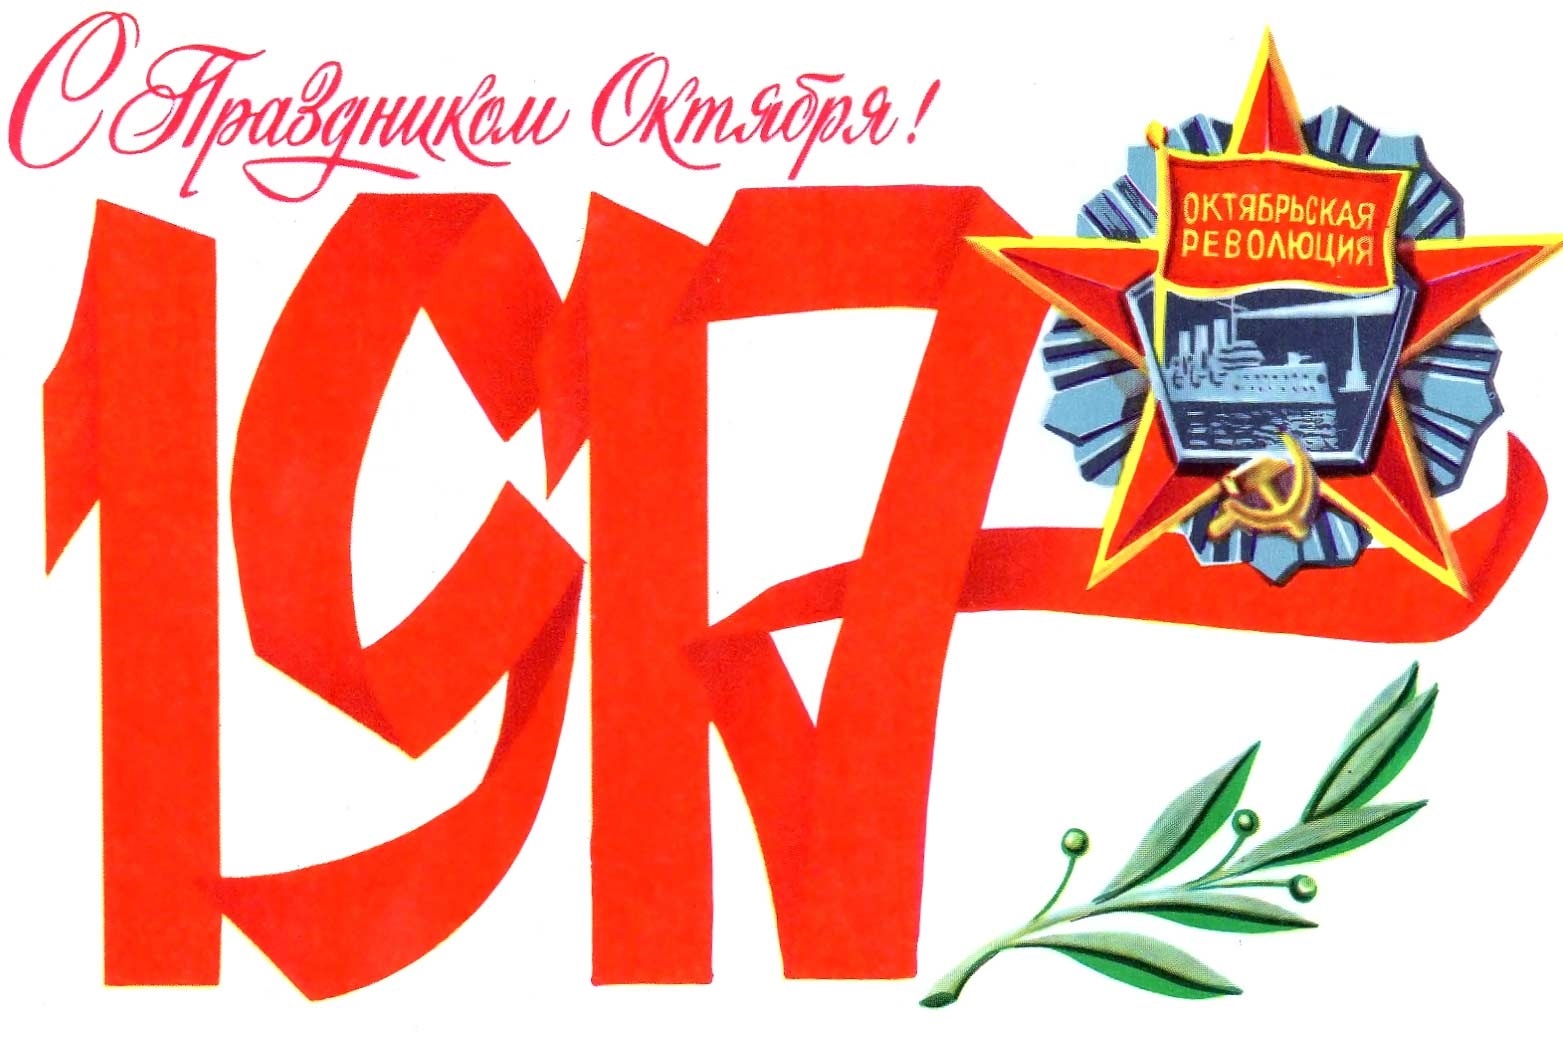 Красивые открытки с днем октябрьской революции 7 ноября003